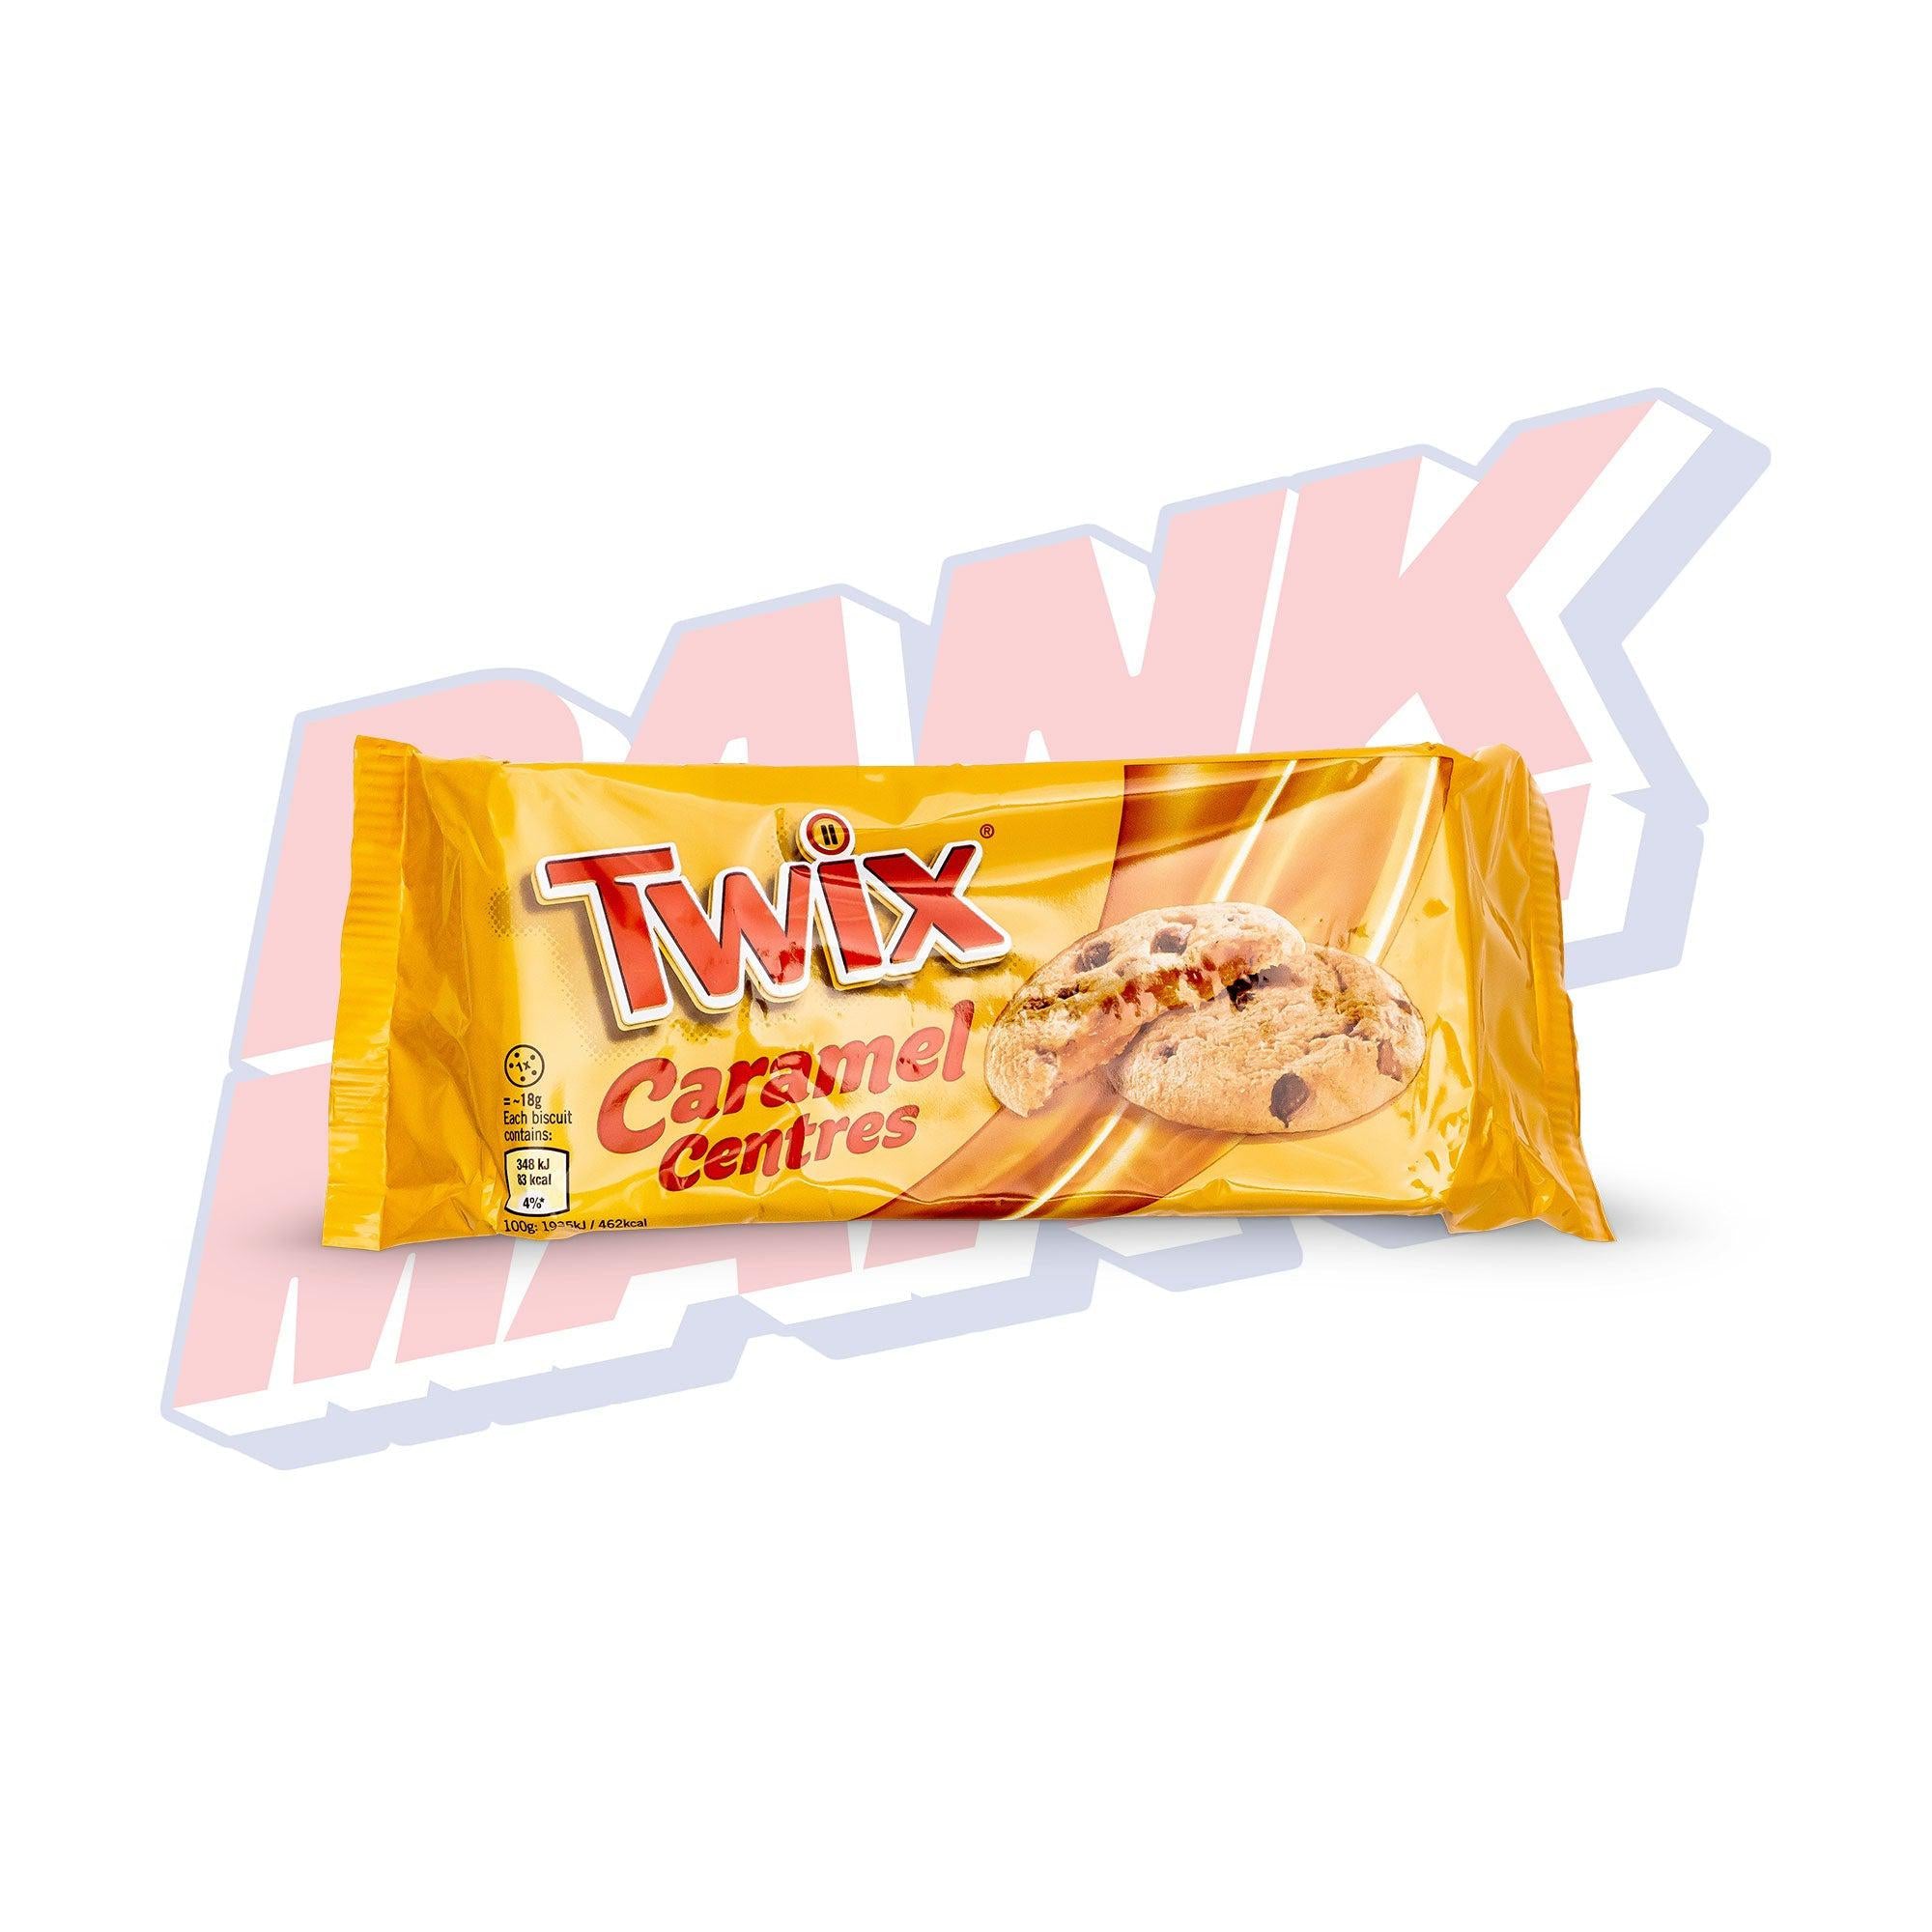 Twix Caramel Centres Cookies (UK) - 144g